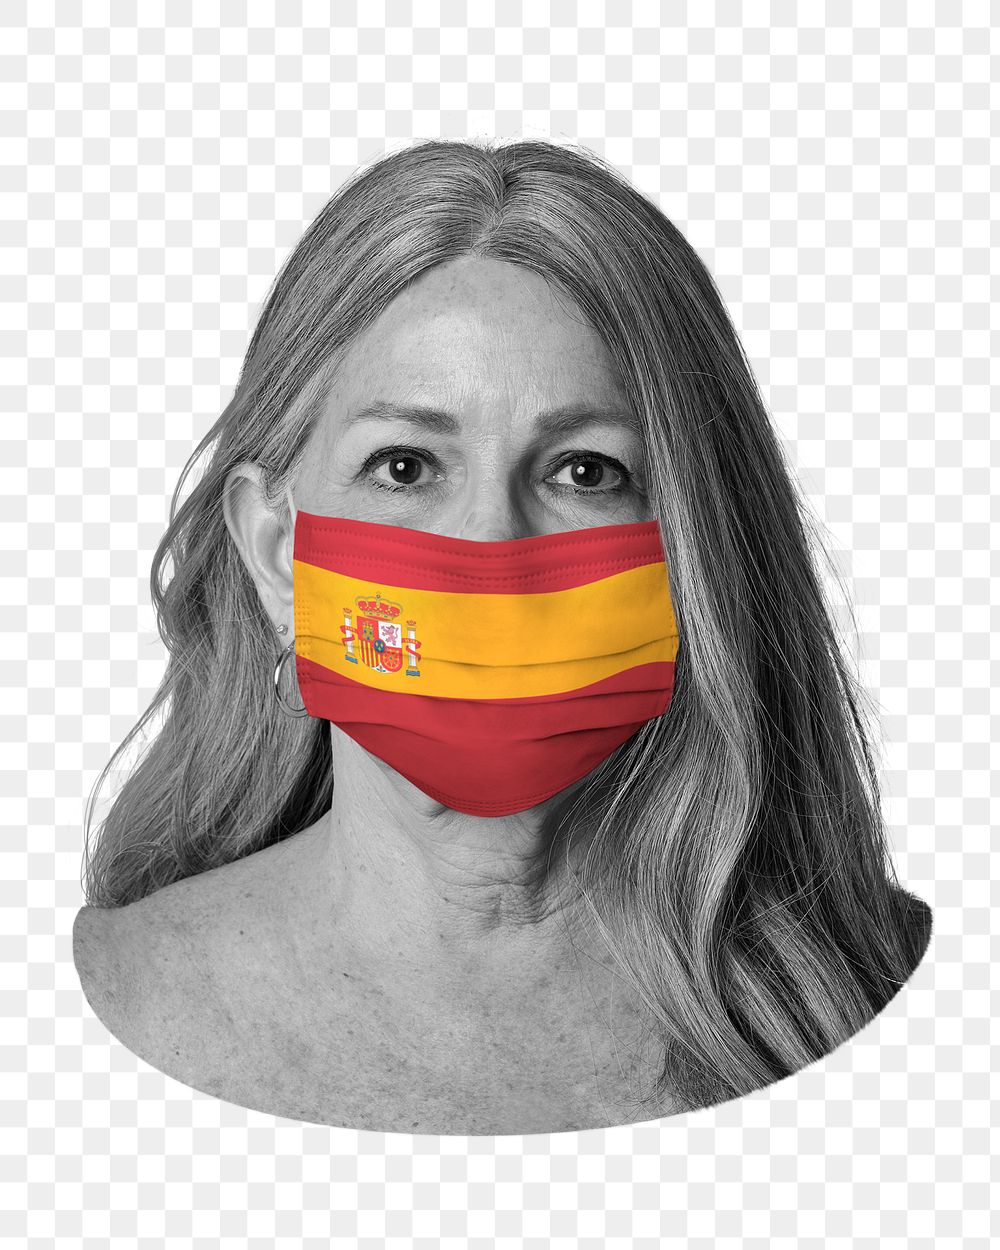 Spanish flag png face mask, transparent background